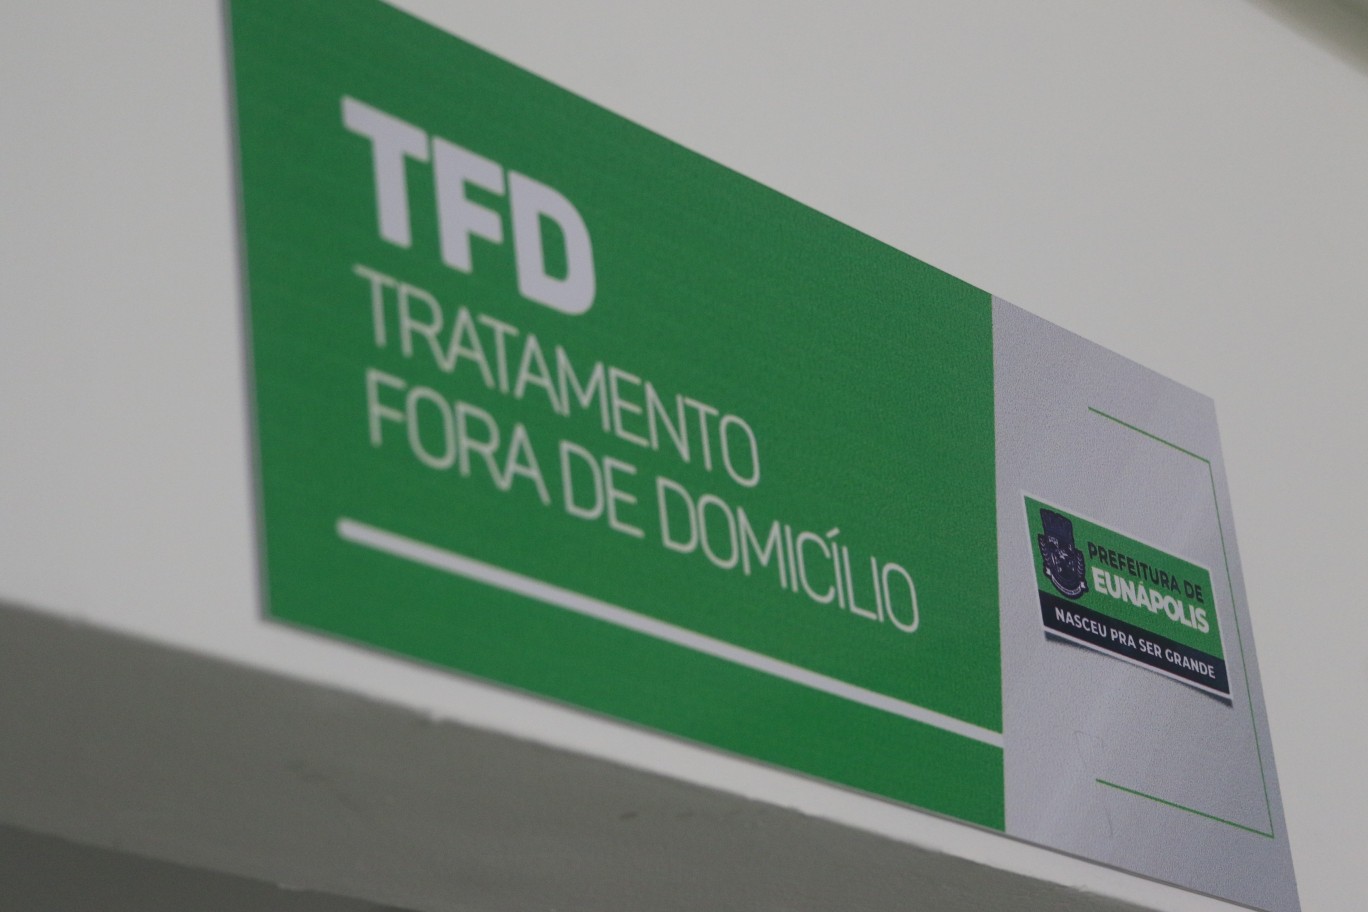 TFD já realizou cerca de 2.400 atendimentos nos dez primeiros meses deste ano